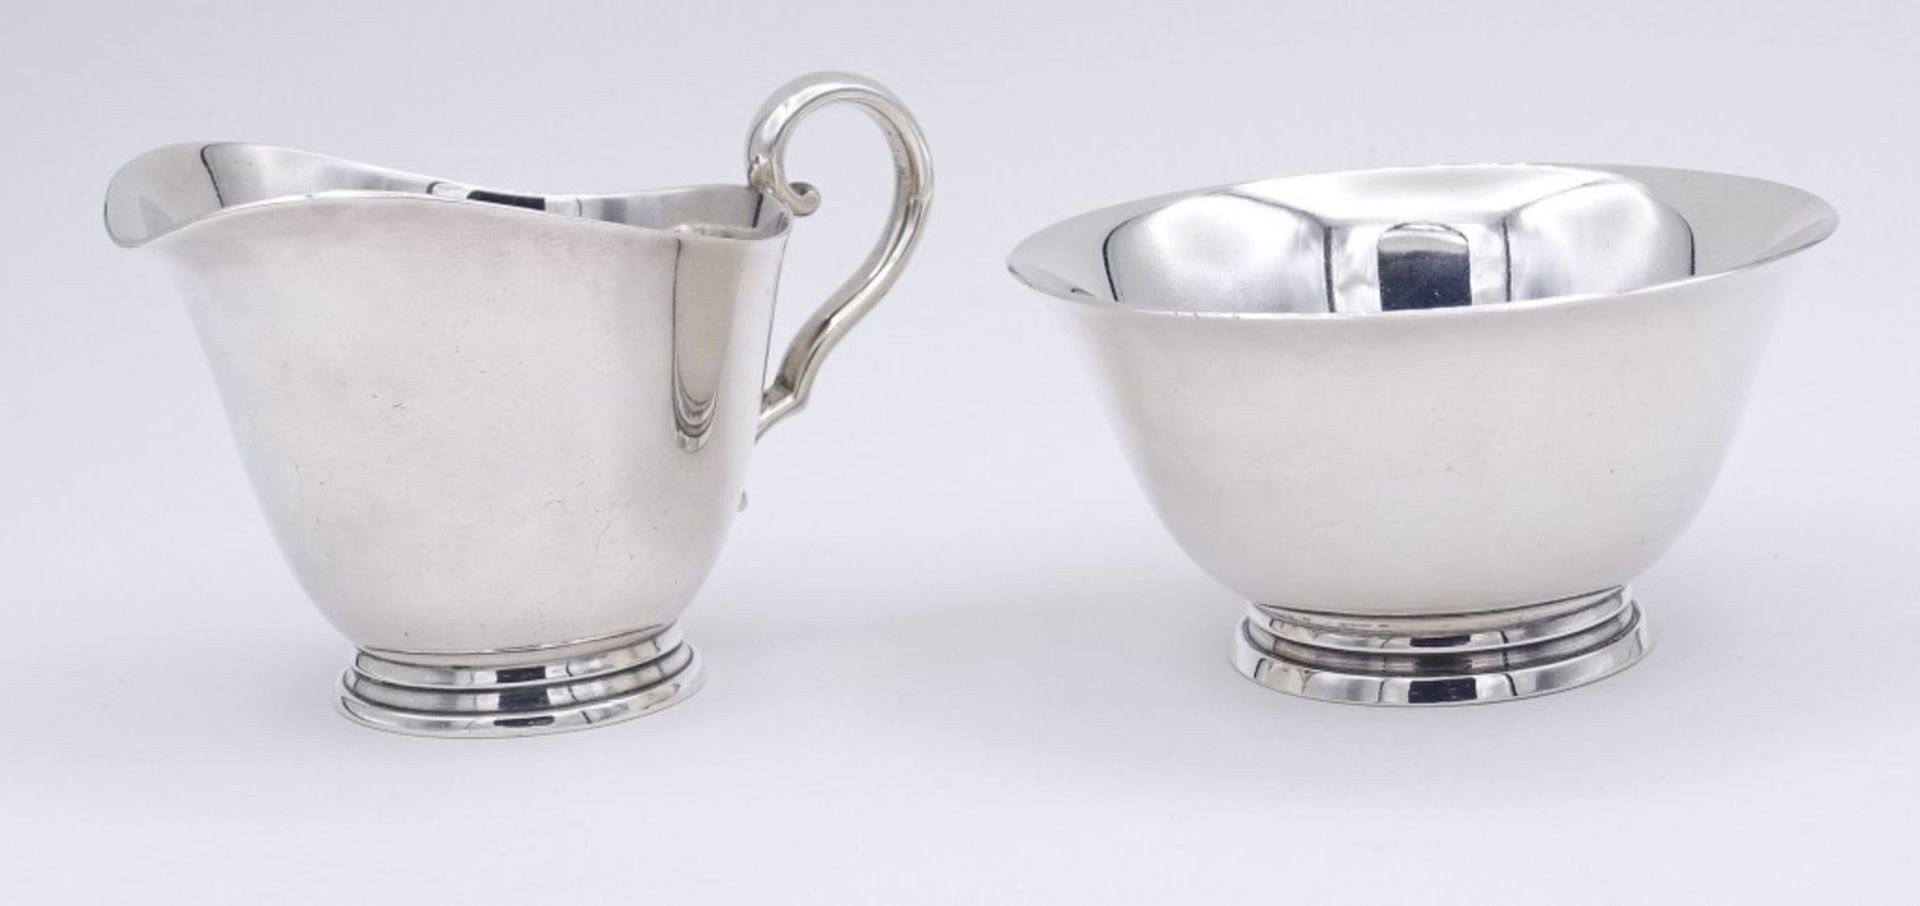 Milch + Zucker,Silber, C.C. Hermann Denmark,Sterling Silber 0.925, H- 4 - 5,5cm, zus.142g. - Image 4 of 6